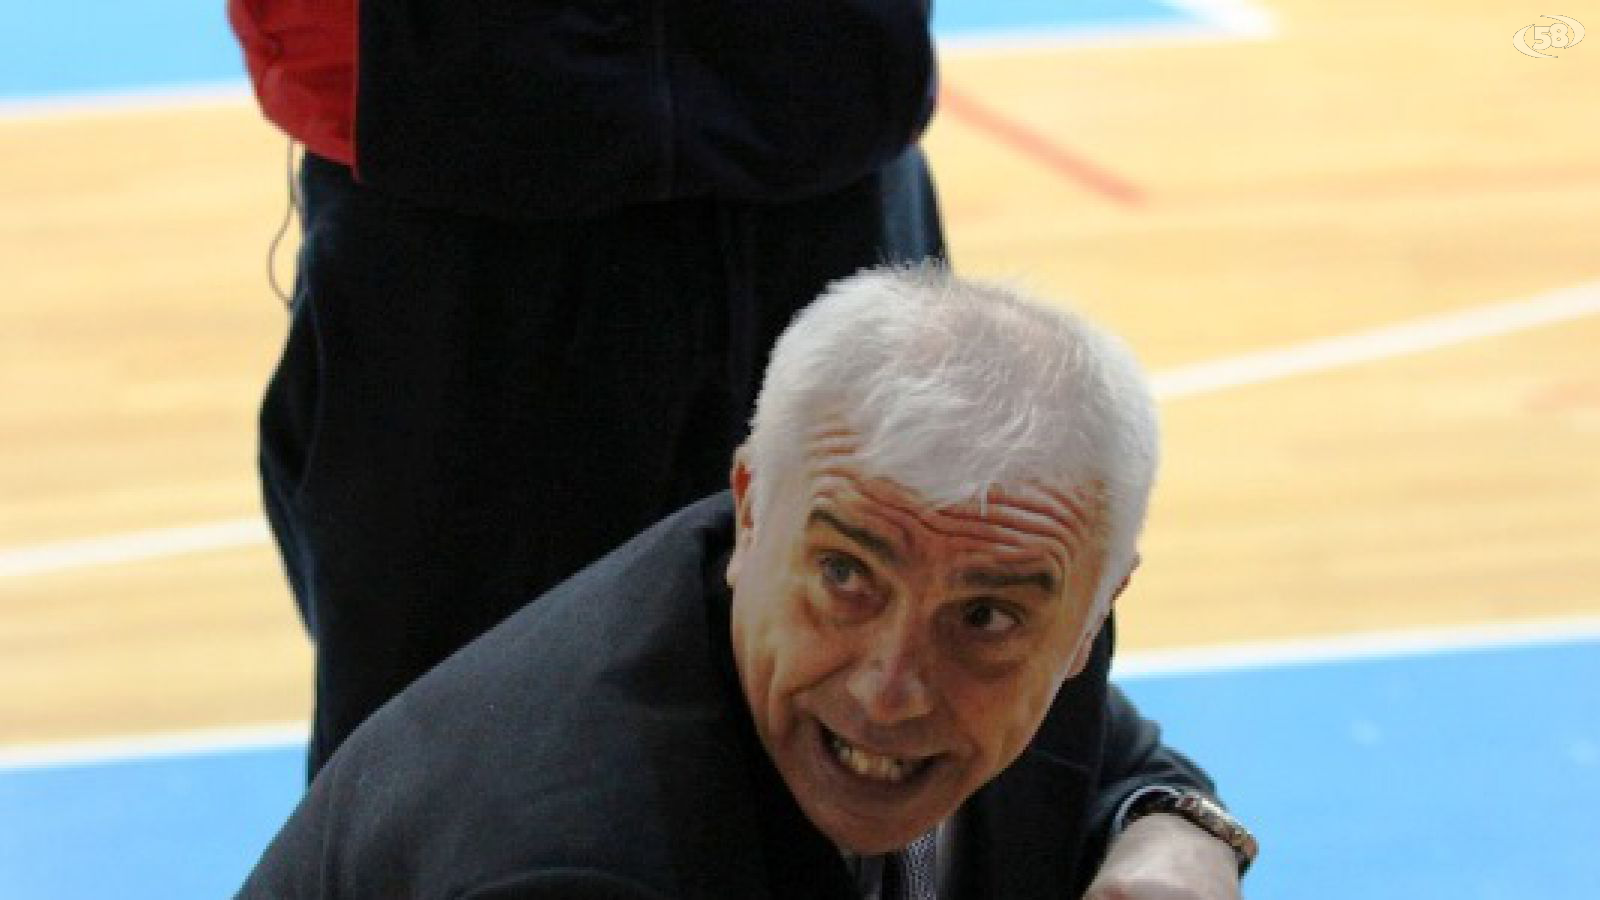 coach Agresti